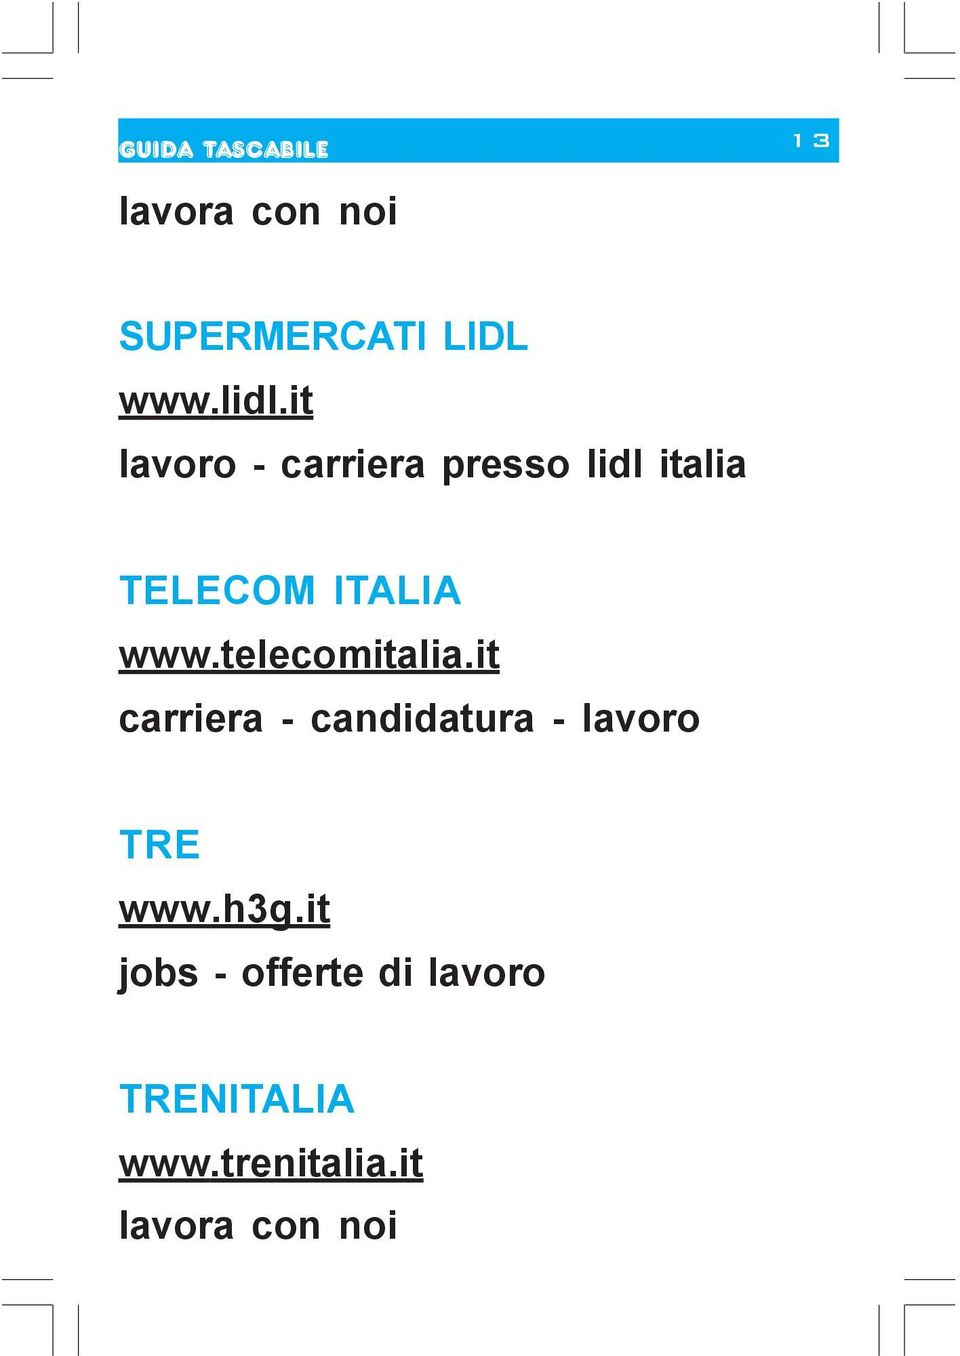 www.telecomitalia.